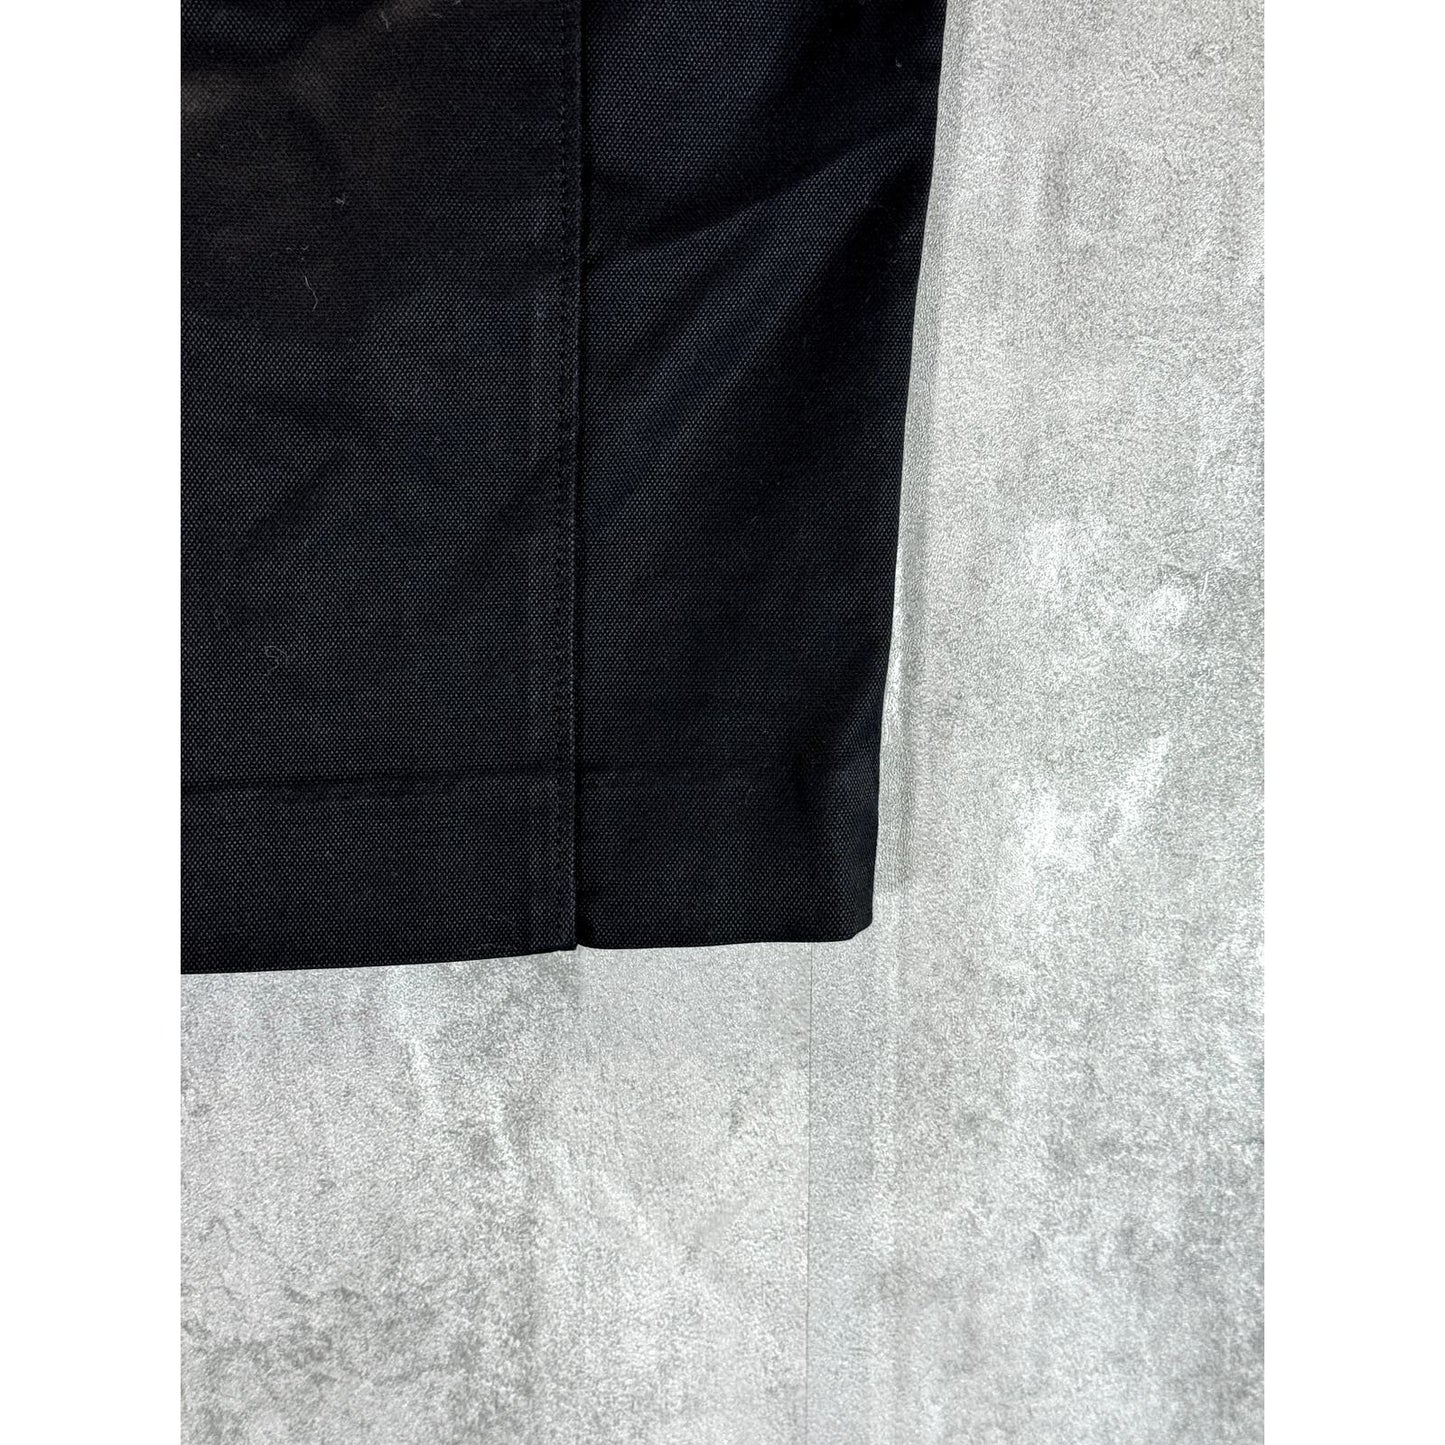 PATRIZIA PEPE Women's Black Solid Mini Pencil Skirt SZ 42(US 6)